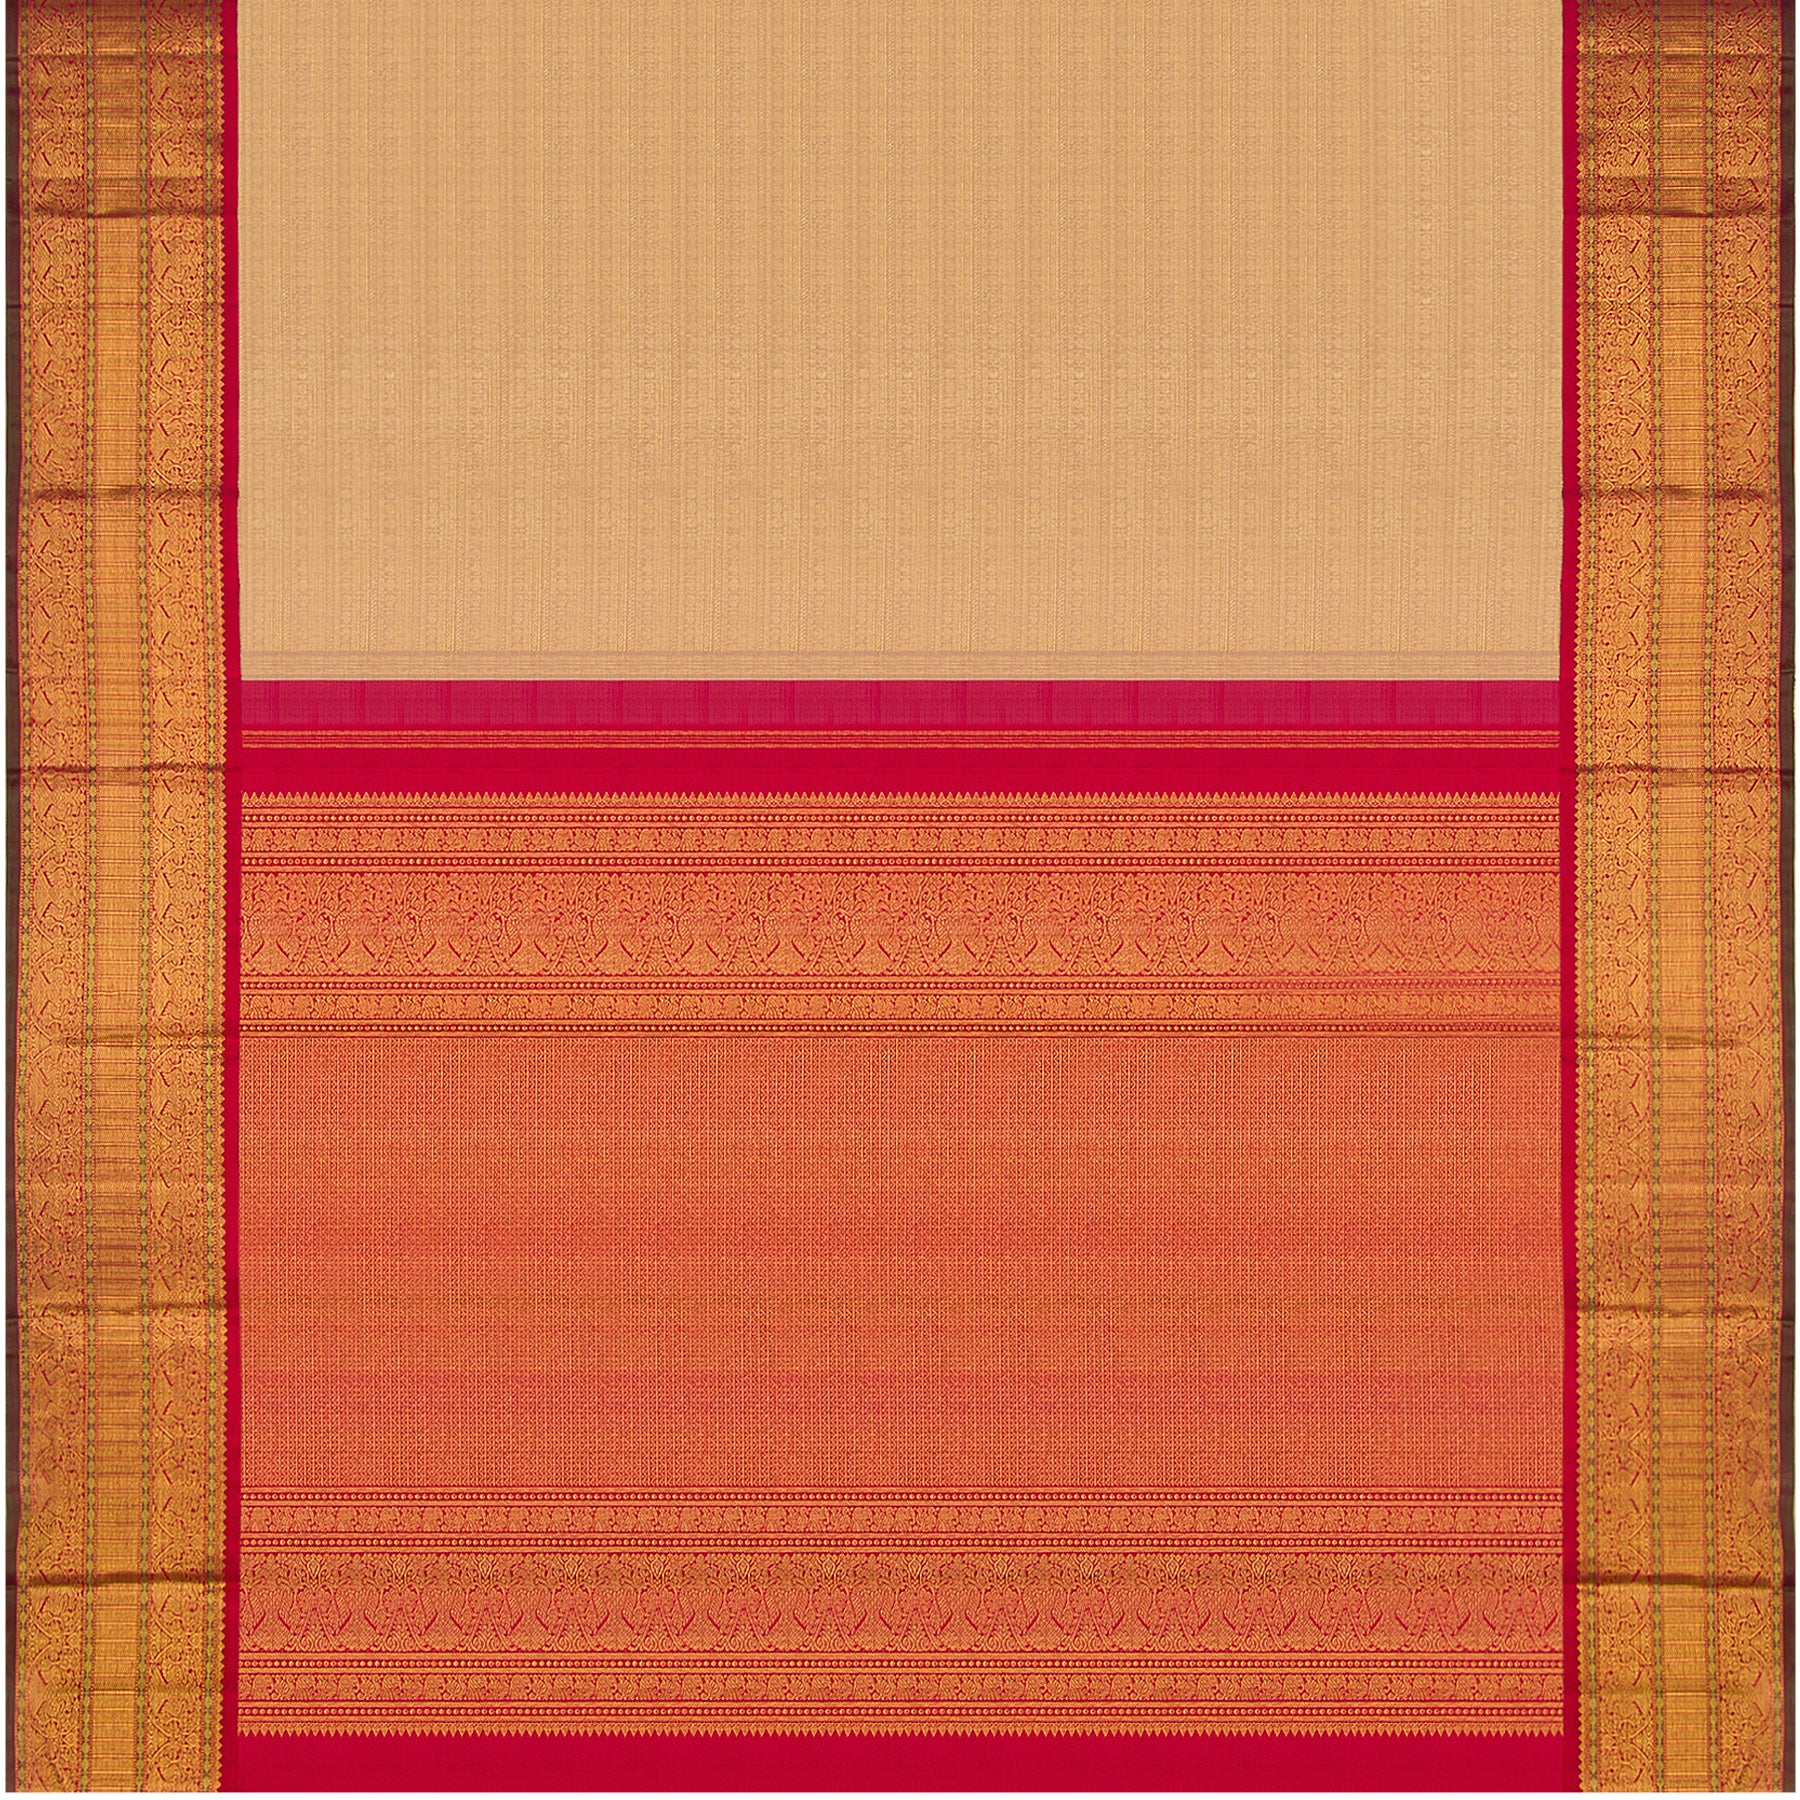 Kanakavalli Kanjivaram Silk Sari 23-110-HS001-02990 - Full View